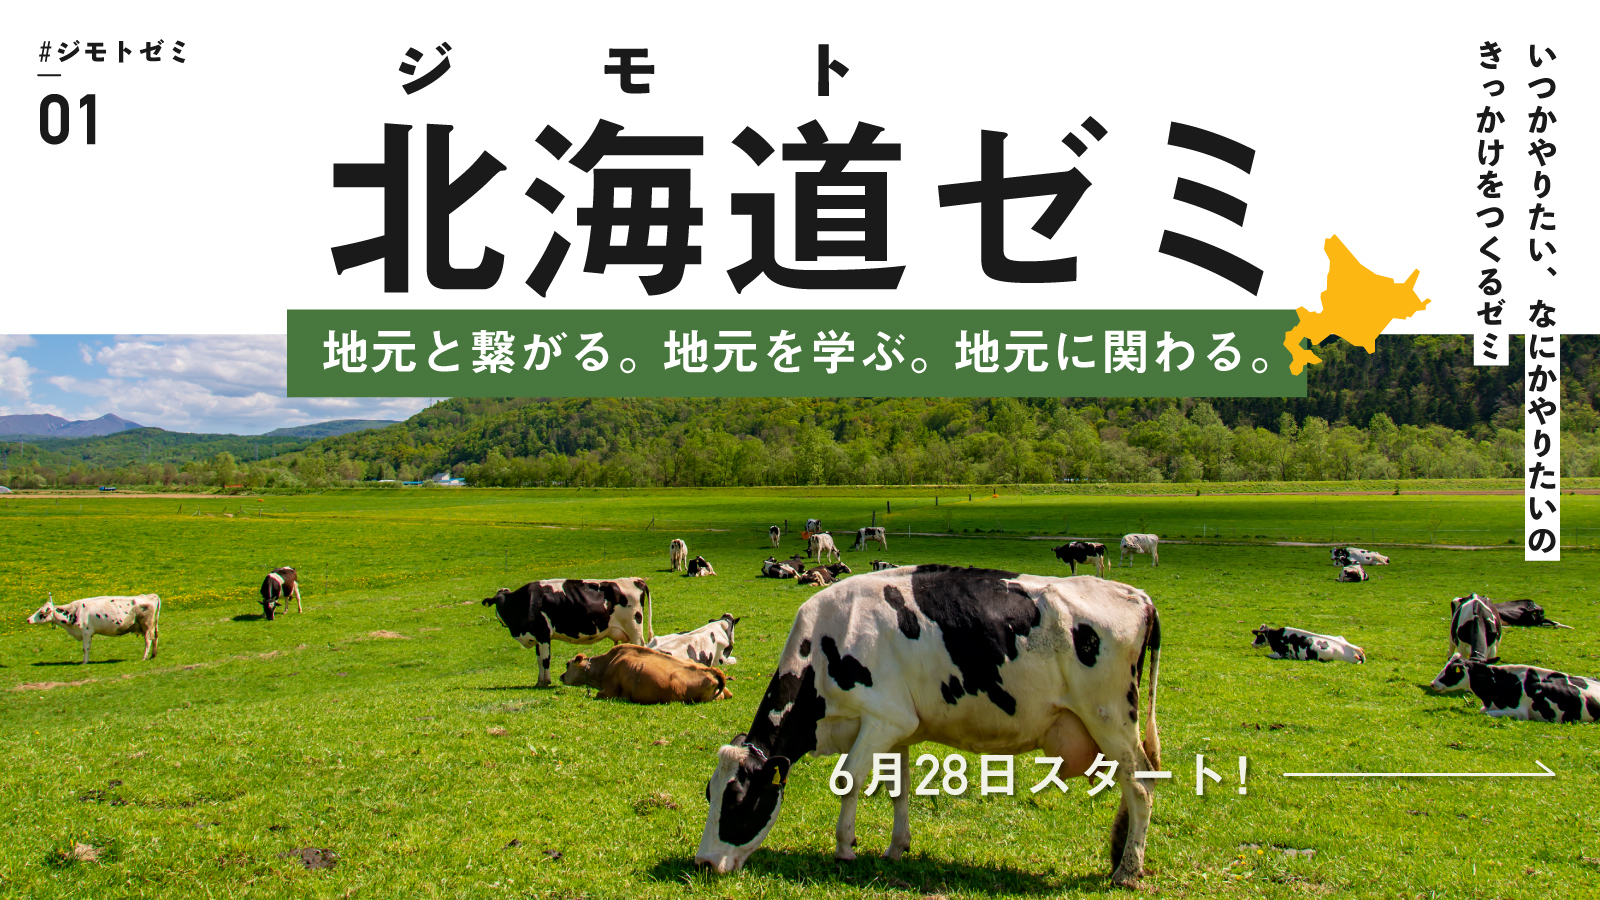 北海道で何か始めたい人向けのコミュニティ 北海道ゼミ が6月28日からスタート 株式会社tabippoのプレスリリース